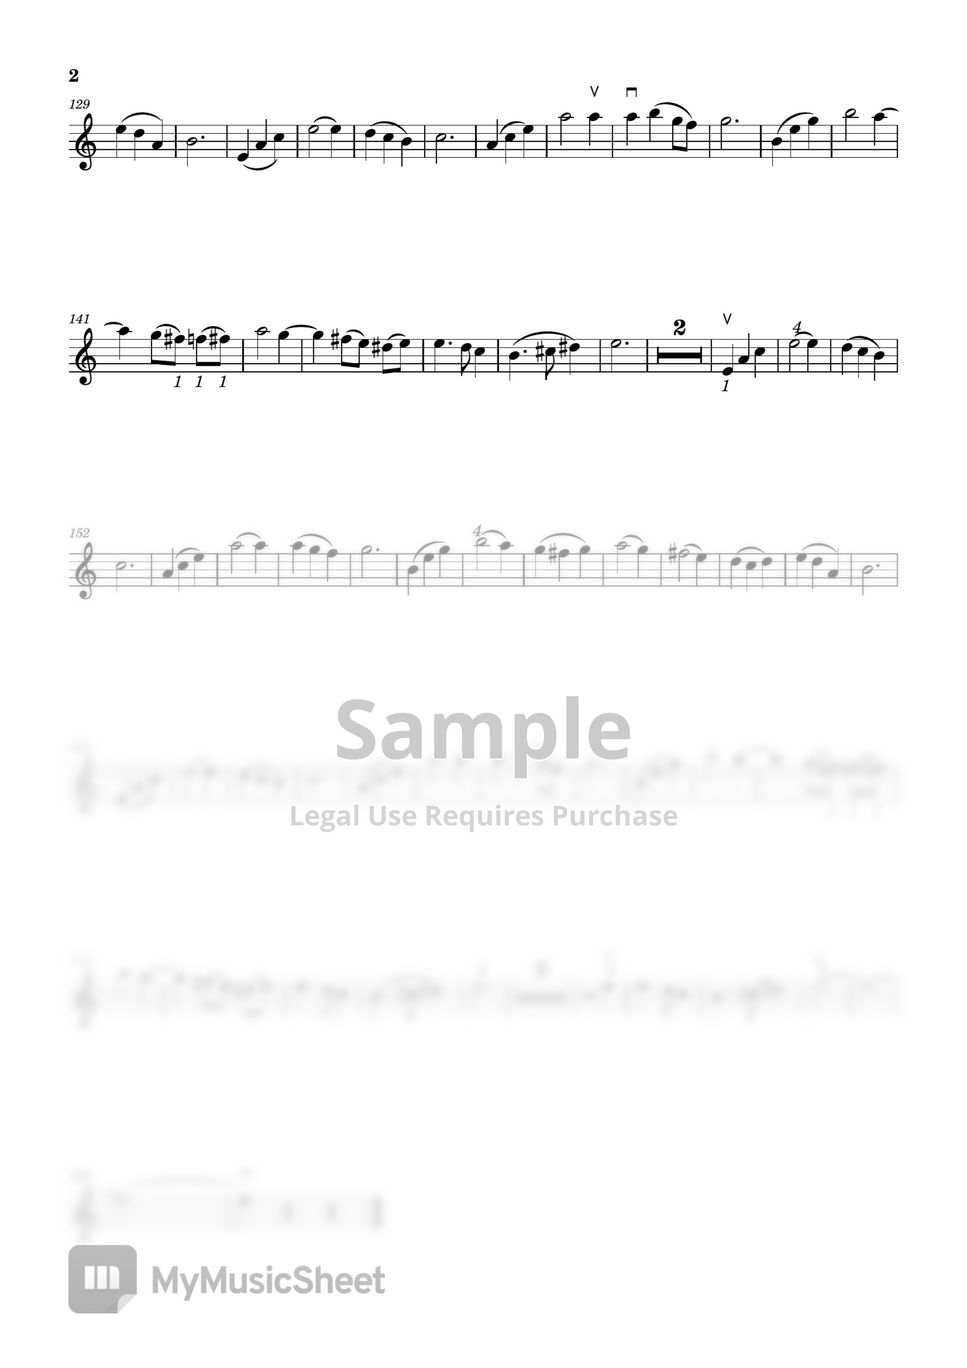 하울의 움직이는 성 - [바이올린 악보] 인생의 회전목마 (쉬운 버전 A minor (보잉, 핑거링 포함)) by Violinist Yujin Oh